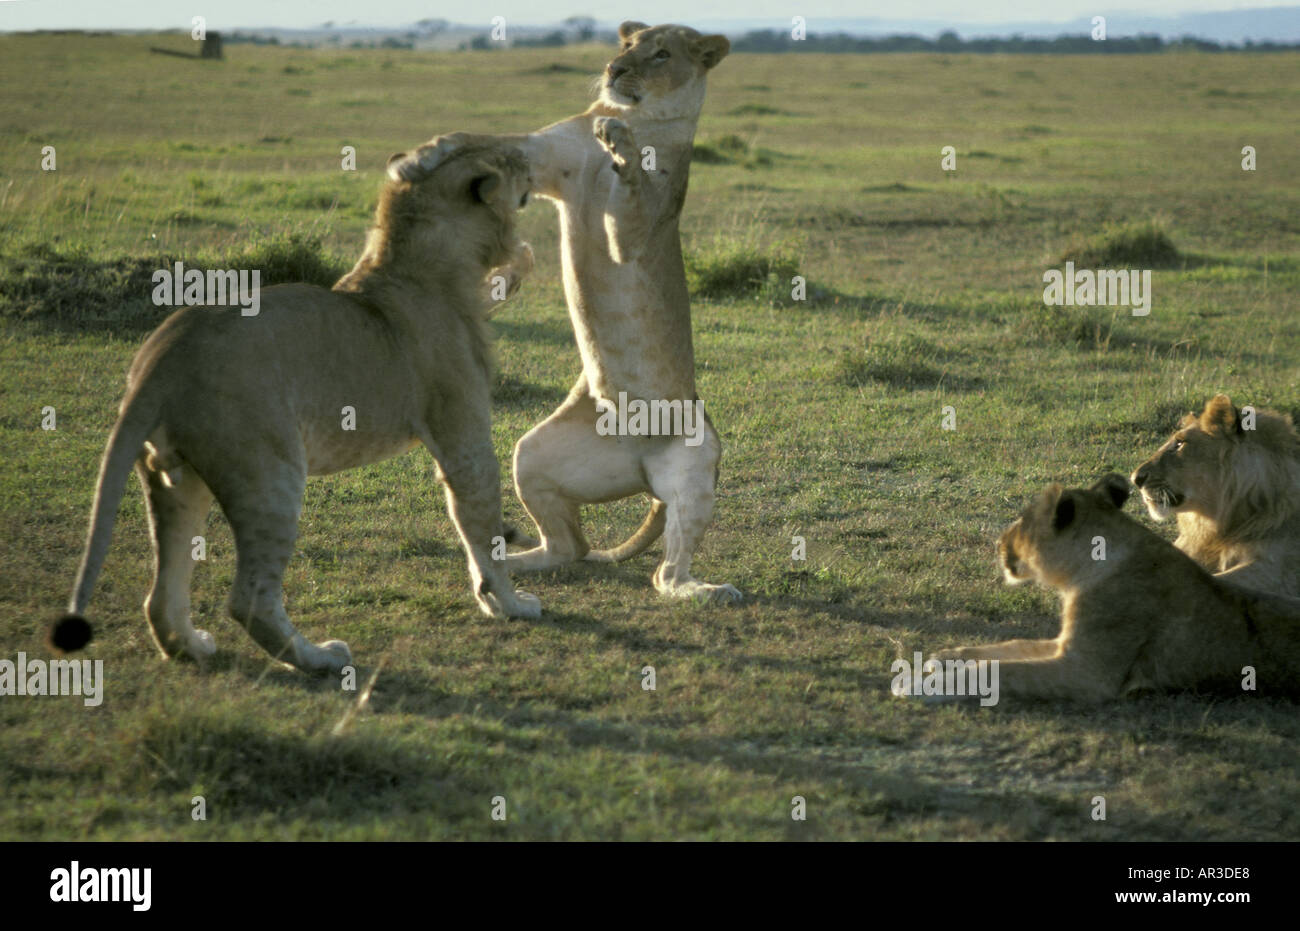 Junge Löwin auf den Hinterbeinen stehend und tätschelte ihren vorderen Pfoten auf den Kopf eines jungen männlichen Löwen Kampf und toben spielen Stockfoto